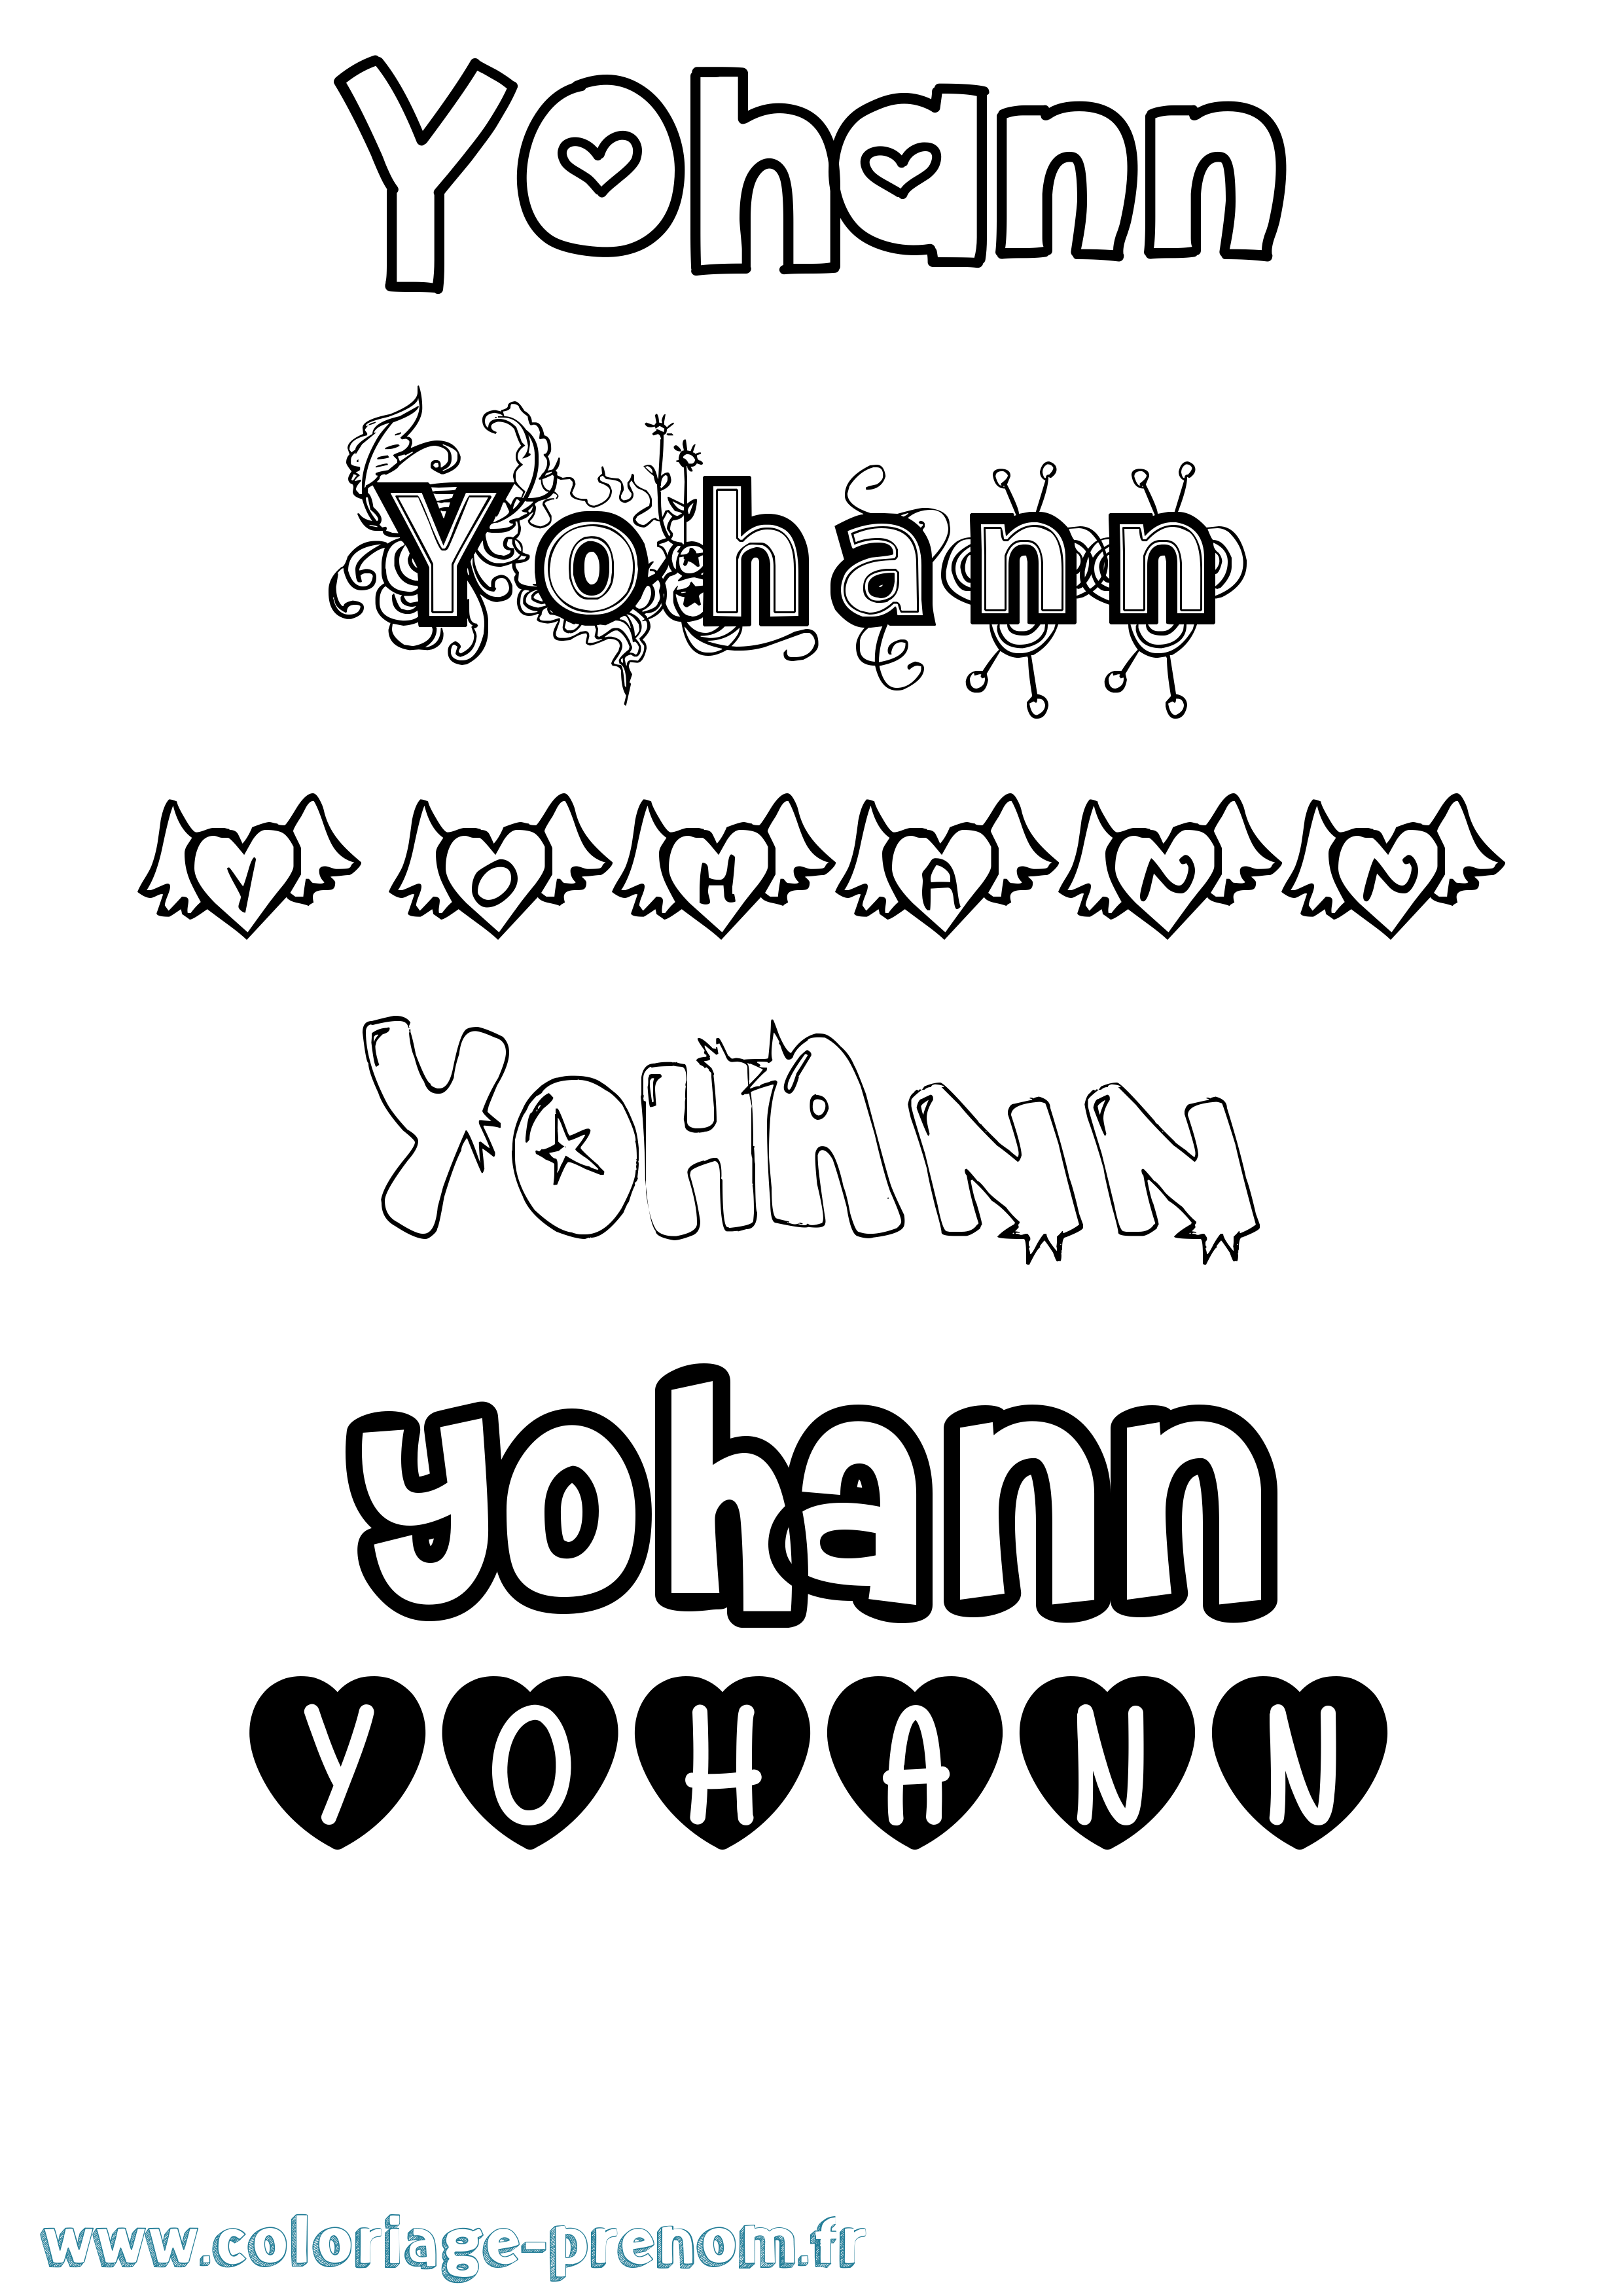 Coloriage prénom Yohann